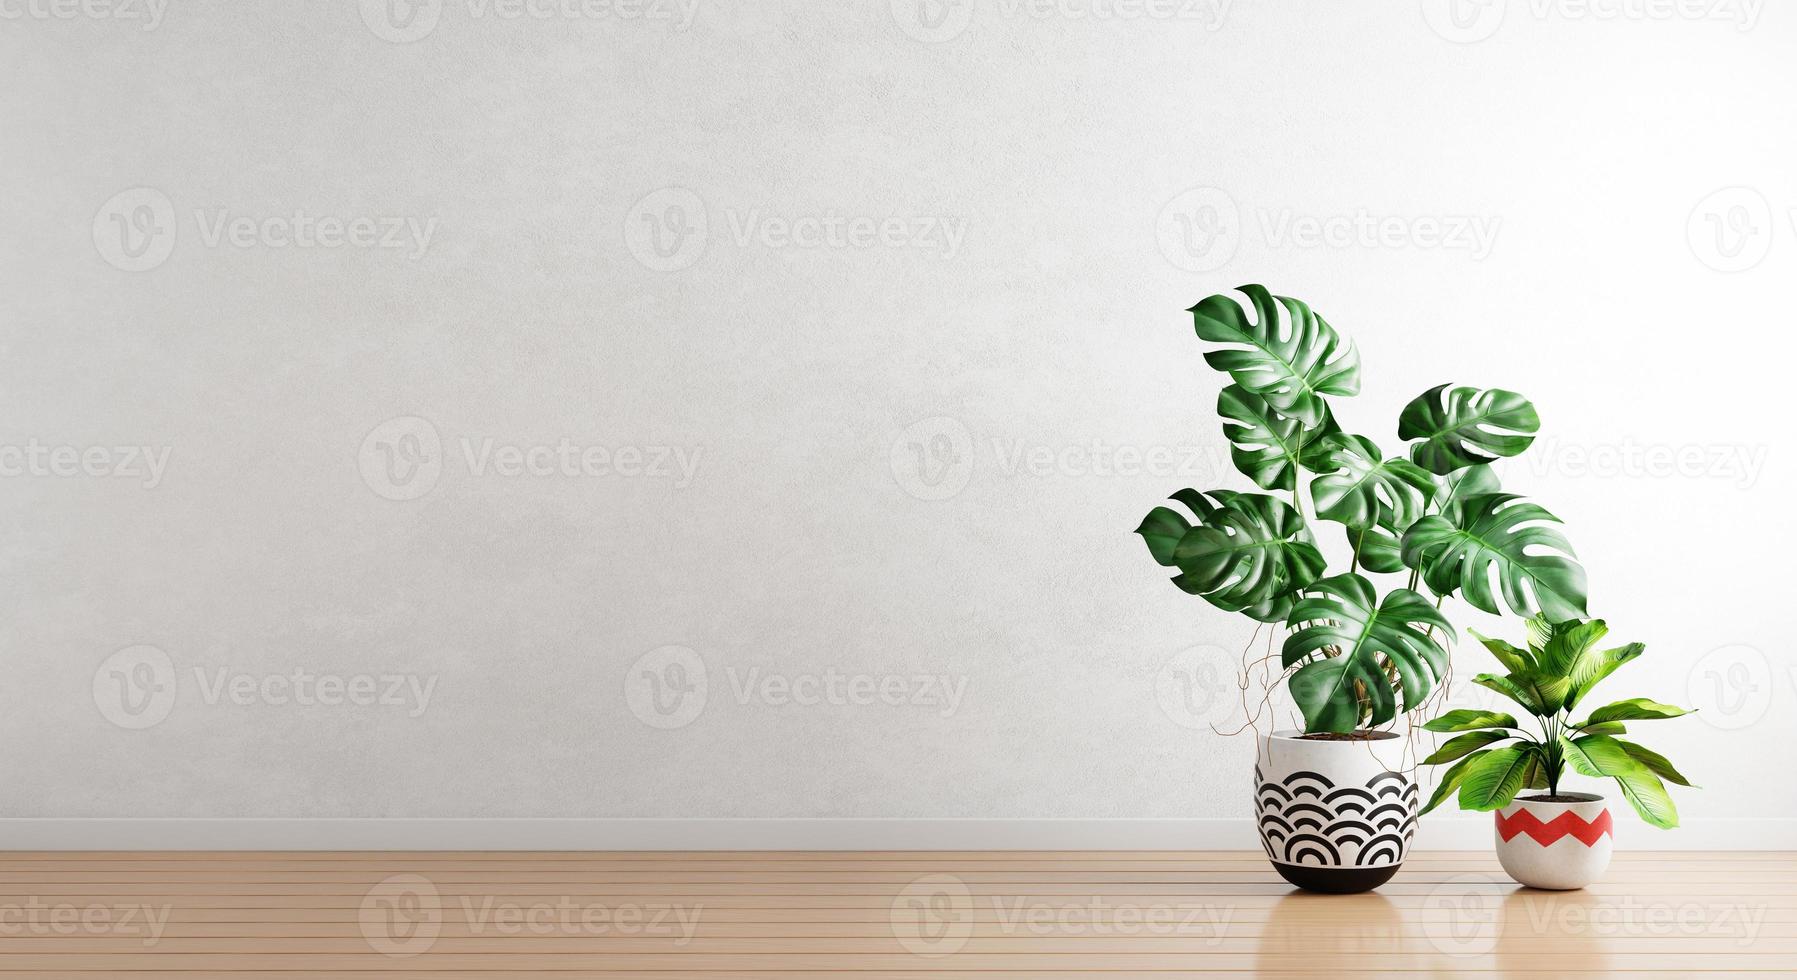 plantes vertes en pot de plantes d'intérieur avec fond de mur vide blanc. architecture d'intérieur et concept naturel. rendu 3d photo